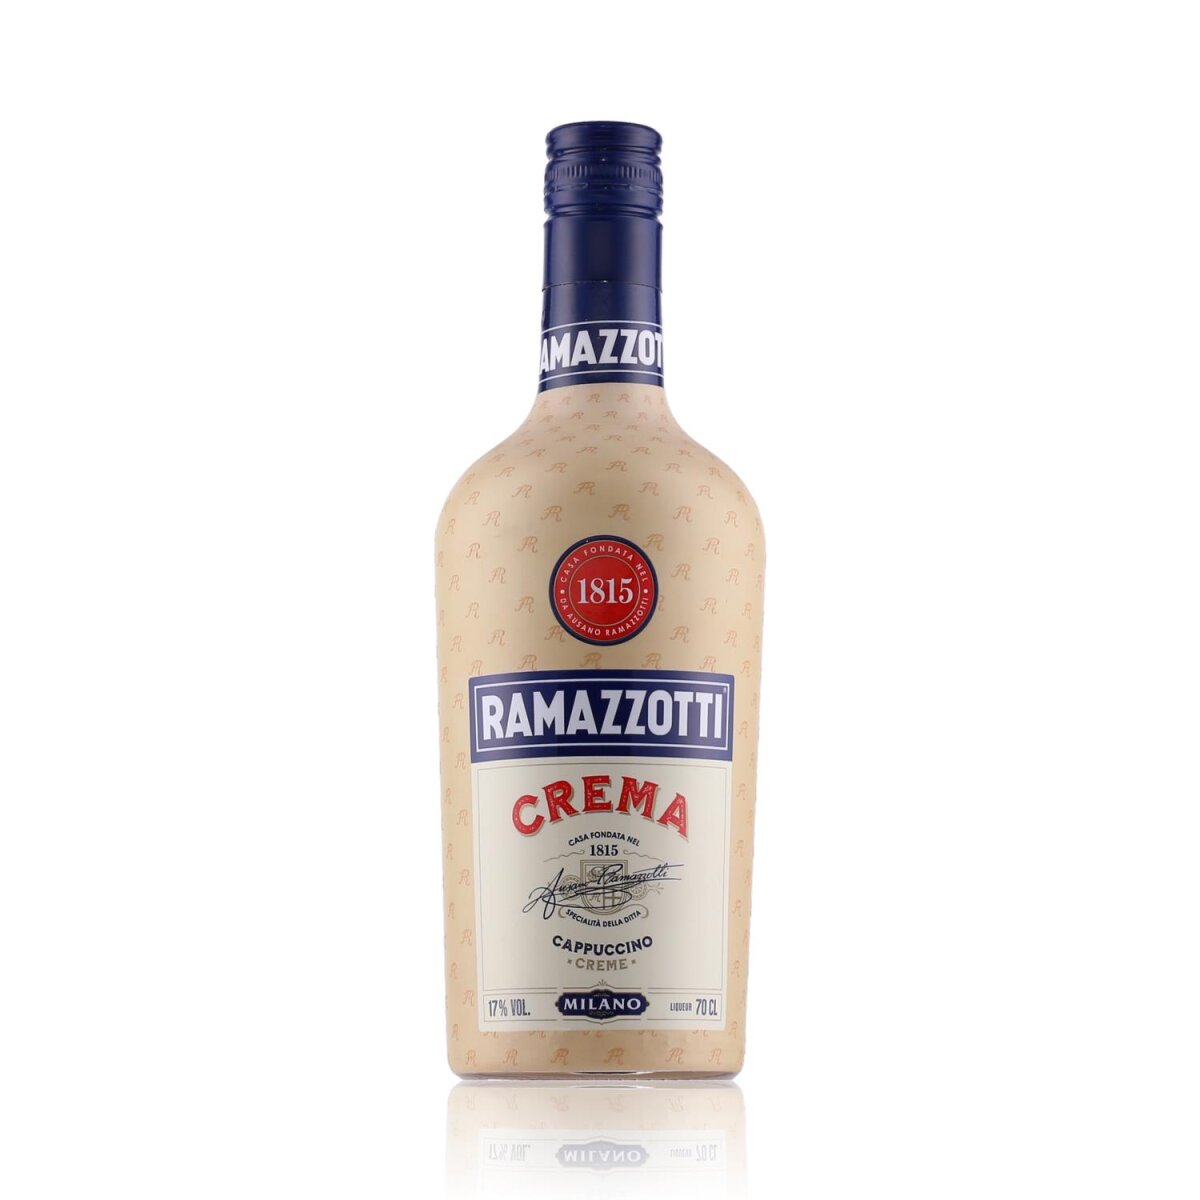 Ramazzotti Crema Cappuccino Likör 17% Vol. 14,09 € 0,7l